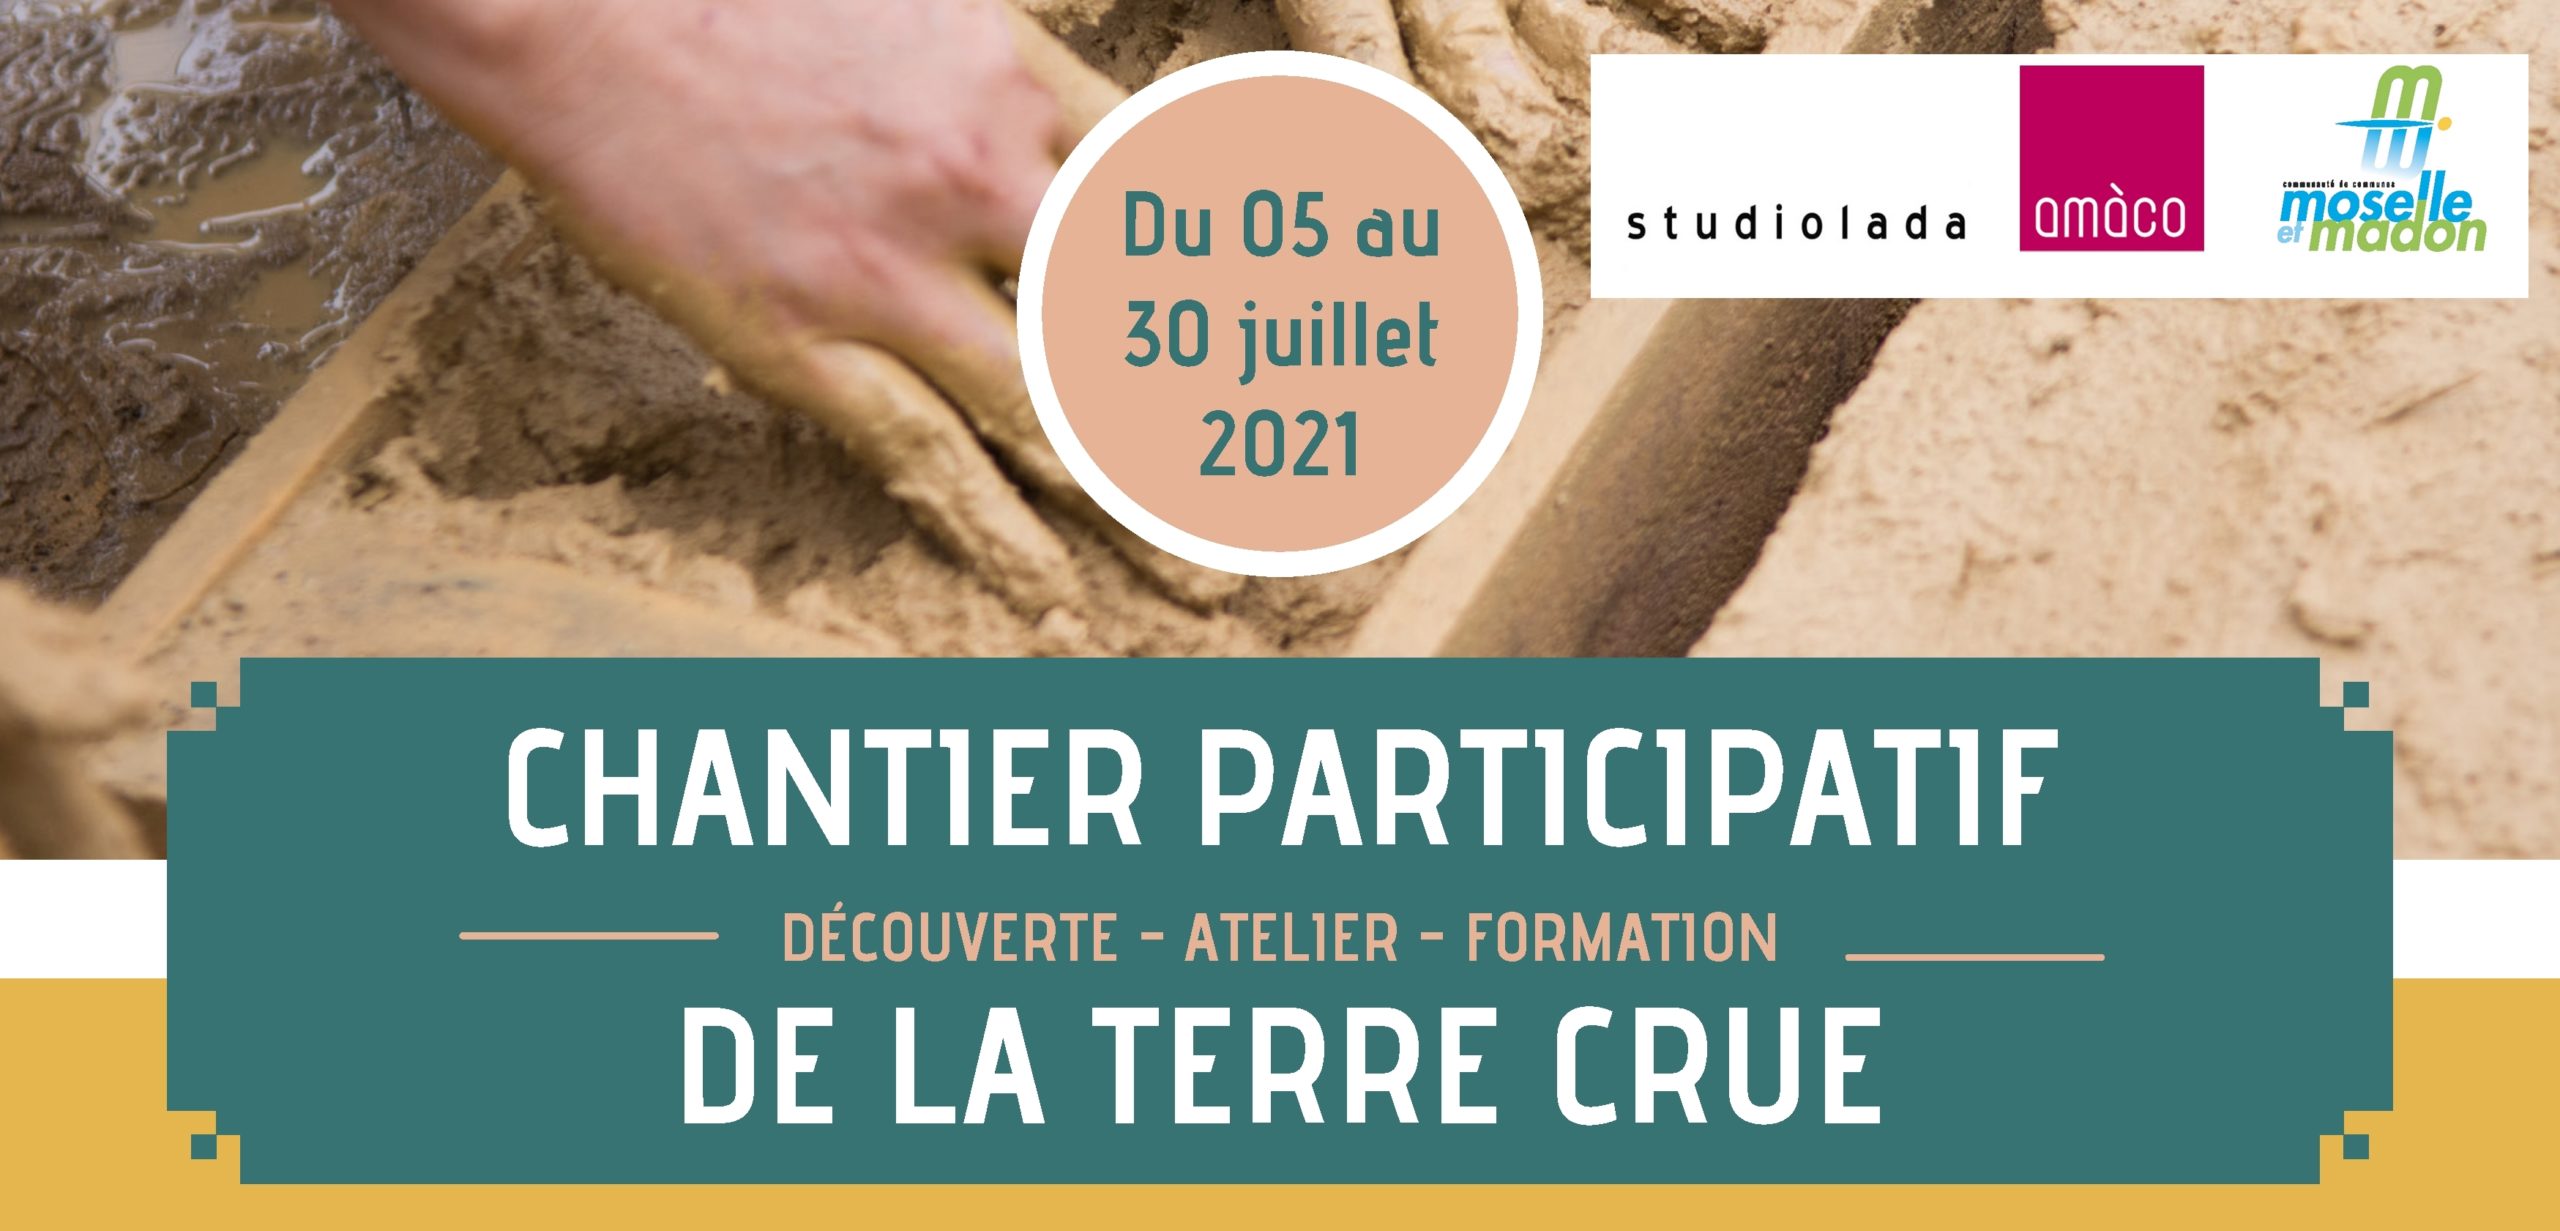 You are currently viewing Chantier participatif de la terre crue !